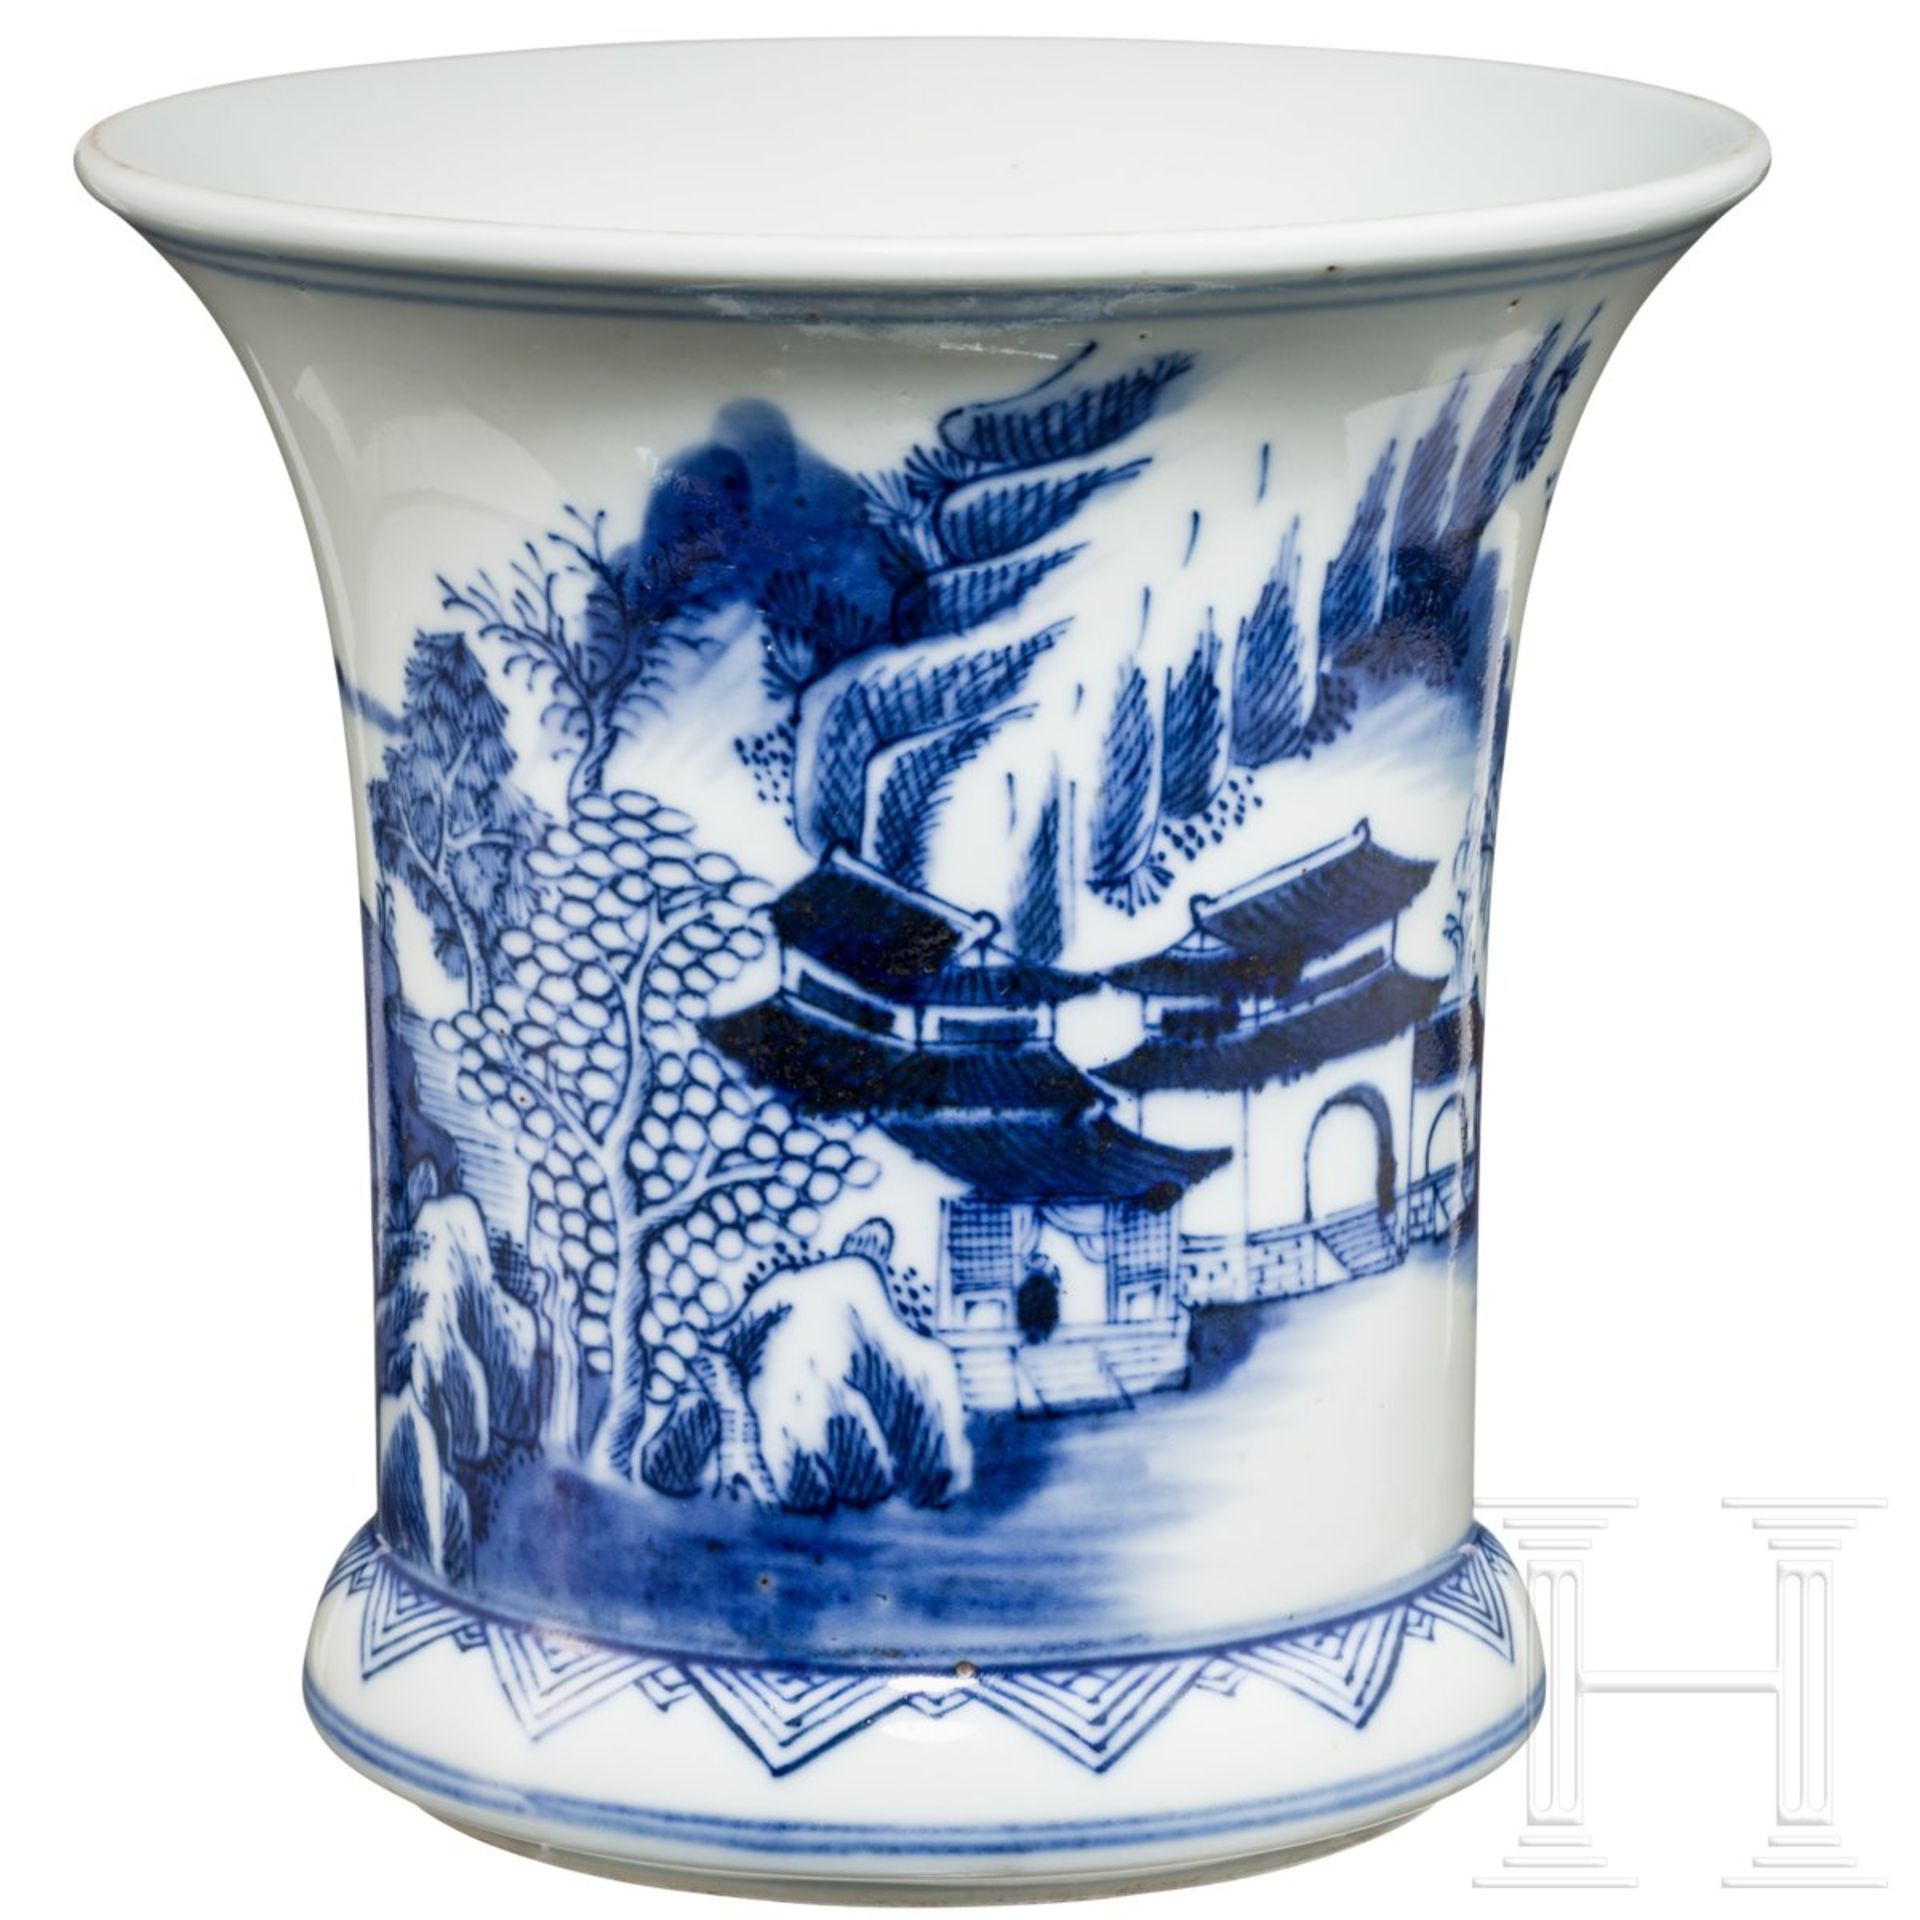 Kleine Gu-Vase mit Landschaftsszene blau auf weiß, China, späte Qing-Zeit - Bild 2 aus 7